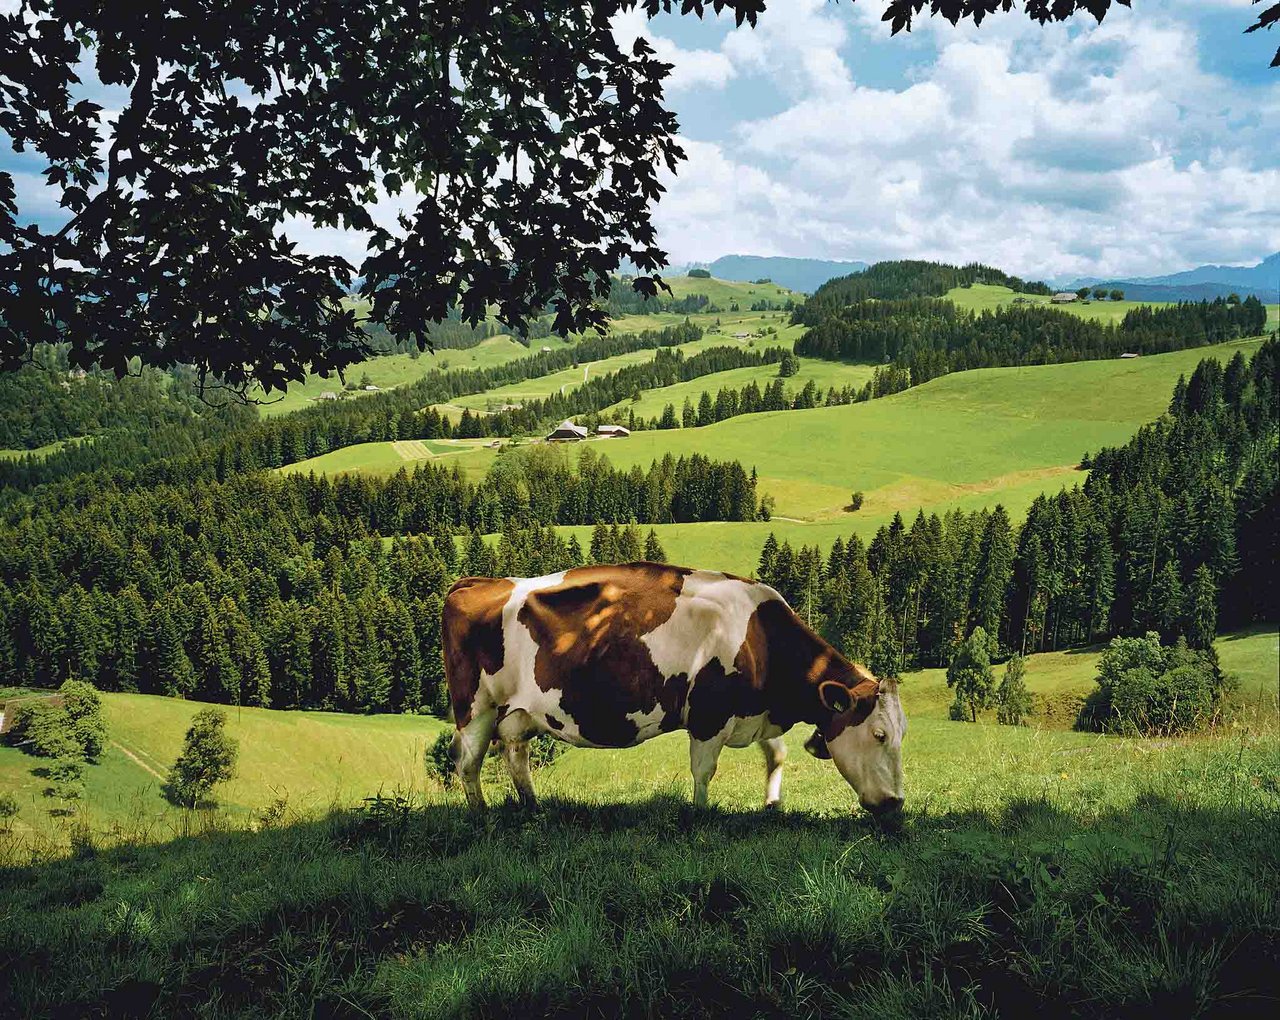 Die Schweiz ist ein Milchland, hat stolze Milchproduzenten und starke Verarbeiter. Das ist eine gute Ausgangslage für die Zukunft. (Bild zVg)